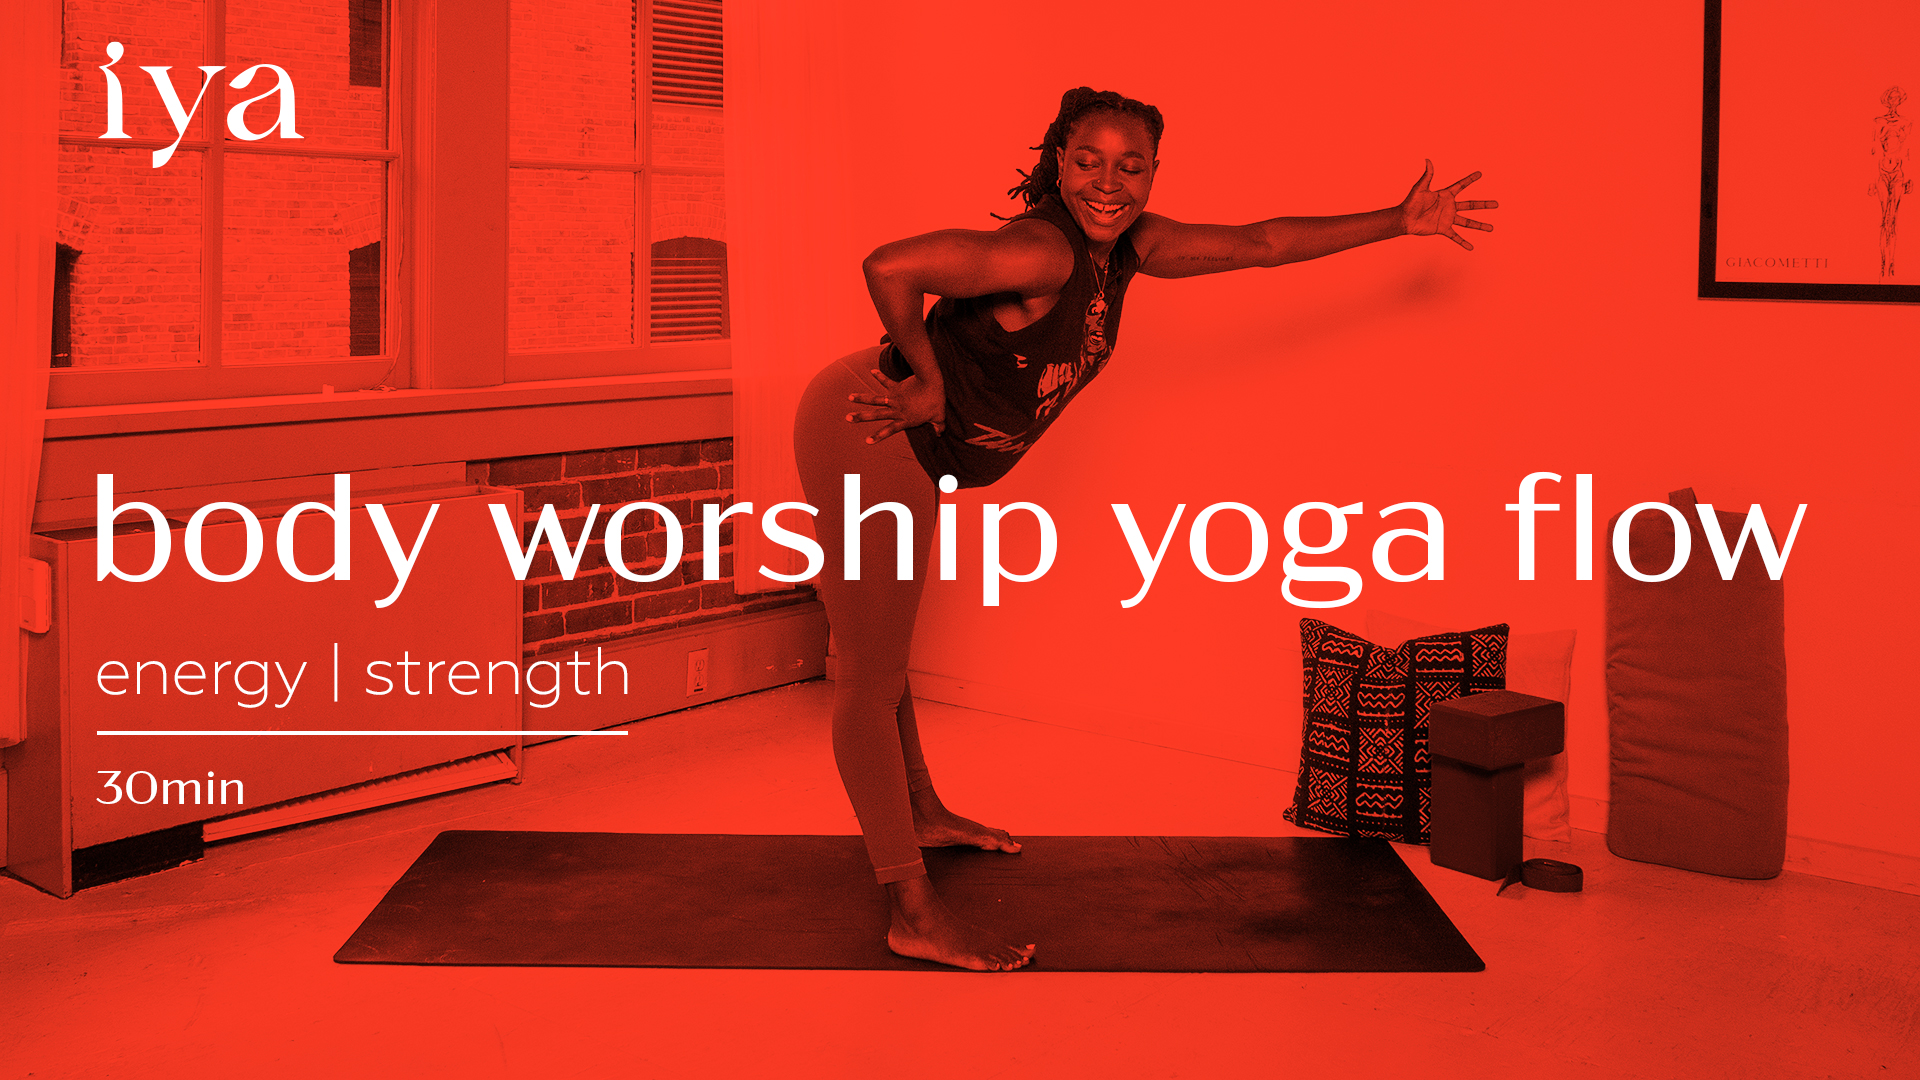 Body Worship Yoga Flow – iyawell